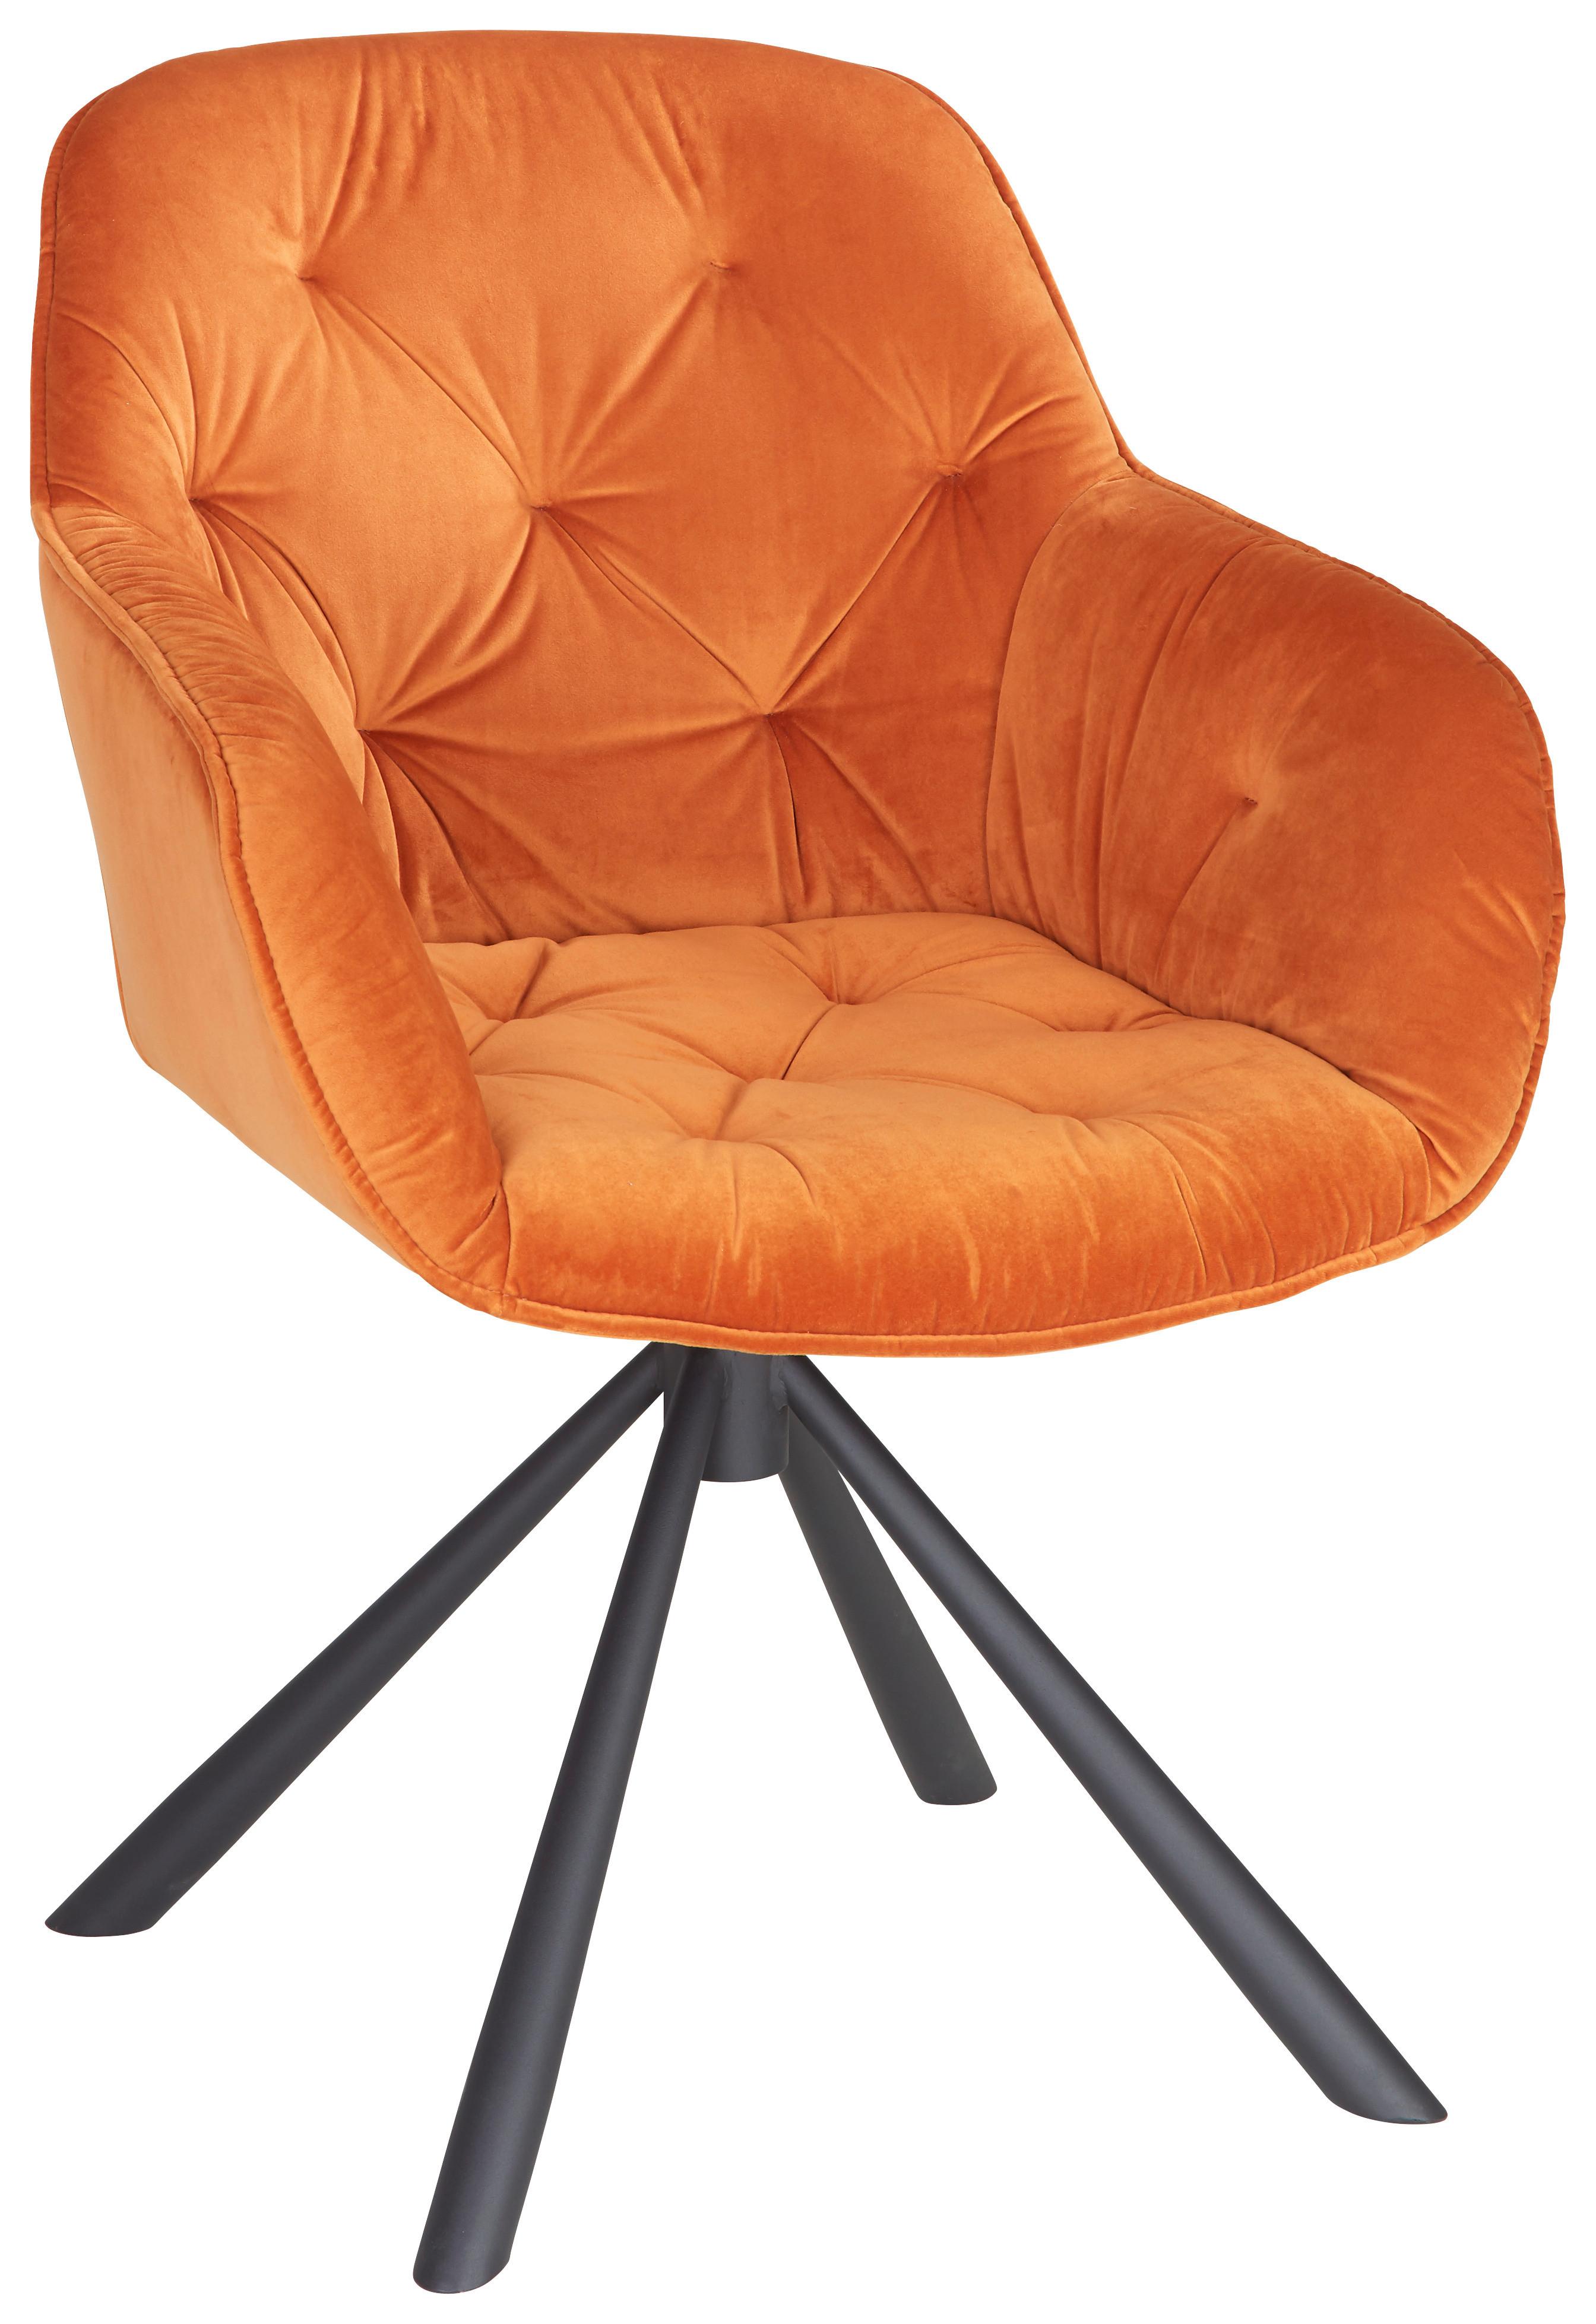 Armlehnstuhl Eileen in Orange Samt - Schwarz/Orange, LIFESTYLE, Textil/Metall (63/86/66cm) - Modern Living